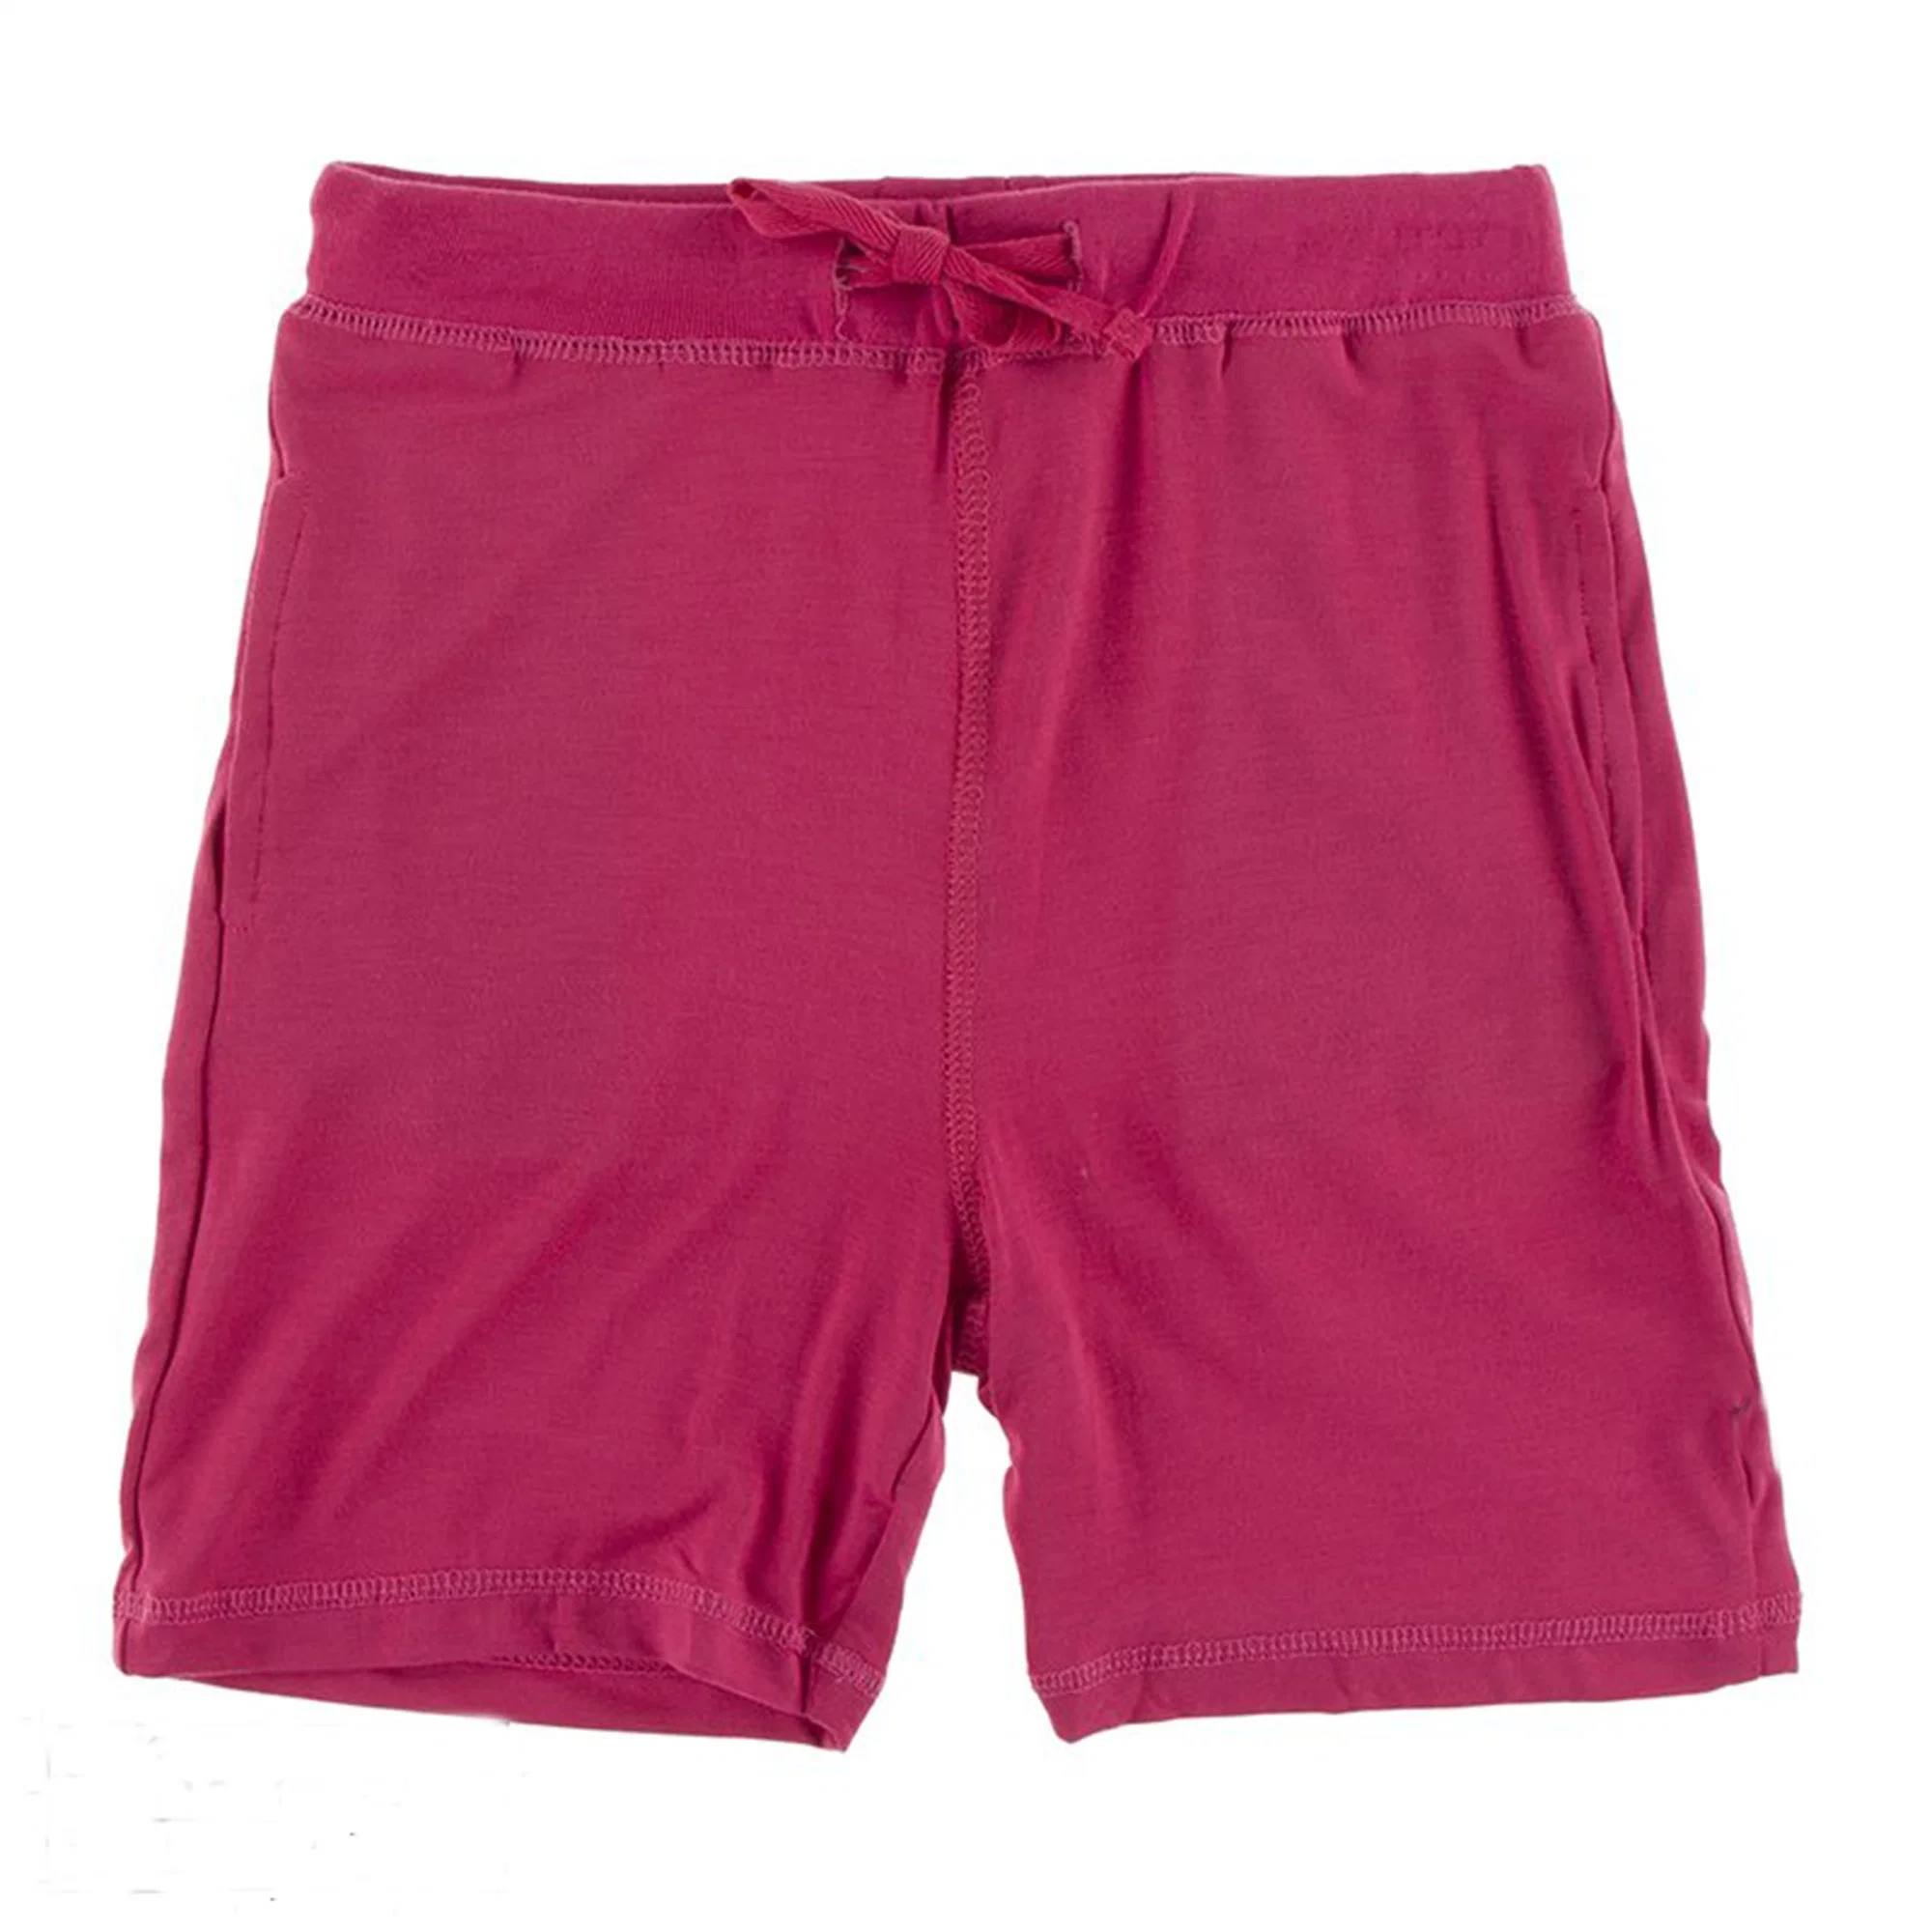 2021 Novo vestuário de exercícios de Verão Outfit Shorts Fitness crianças roupas desgaste das crianças